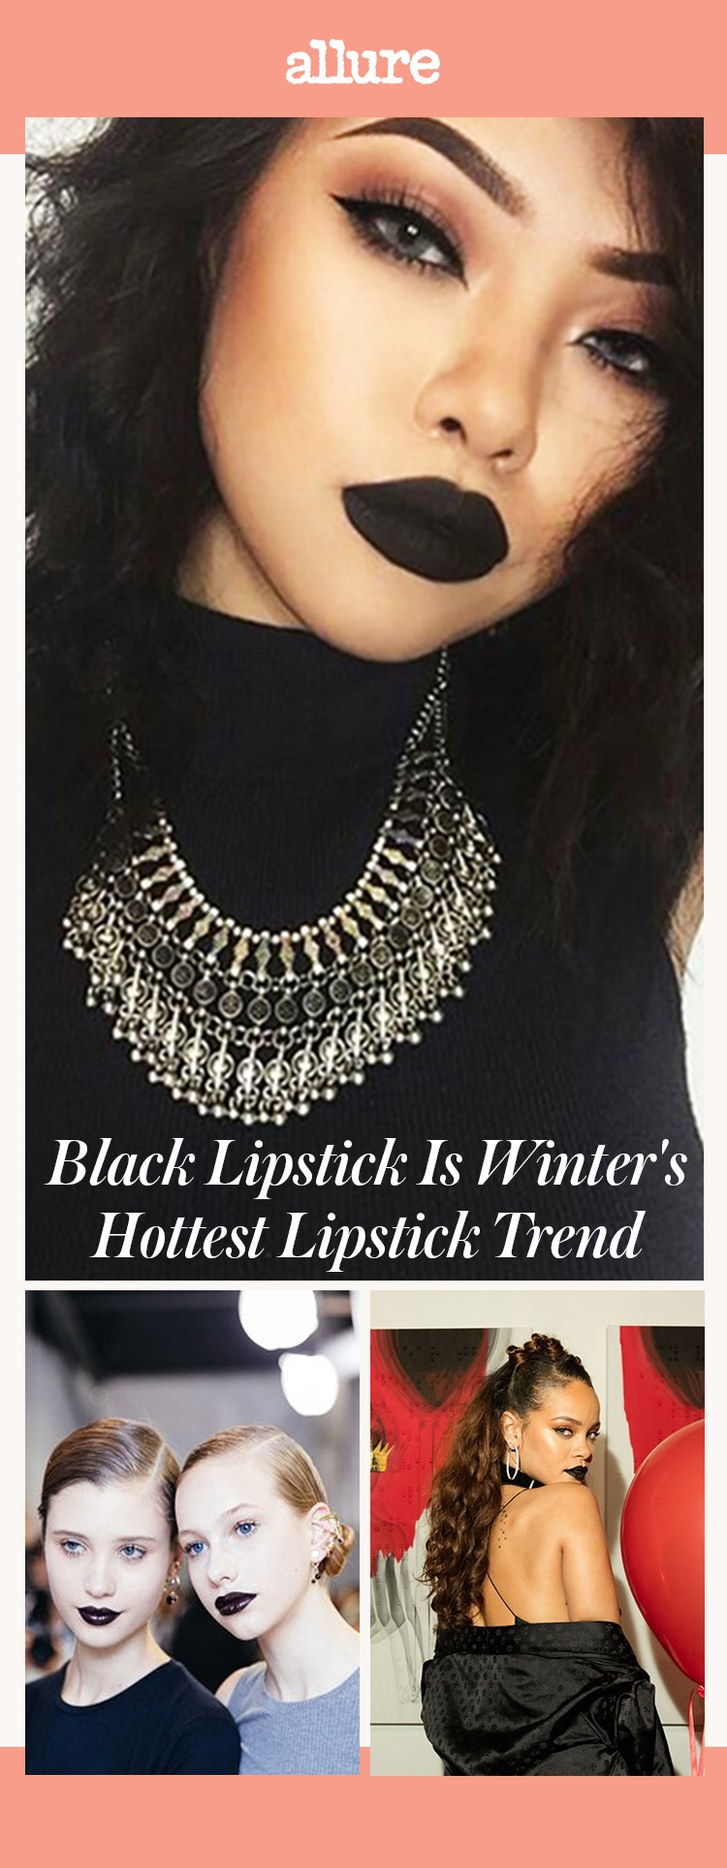 Schwarzer Lippenstift ist Winter's Hottest Lipstick Trend, According to Pinterest